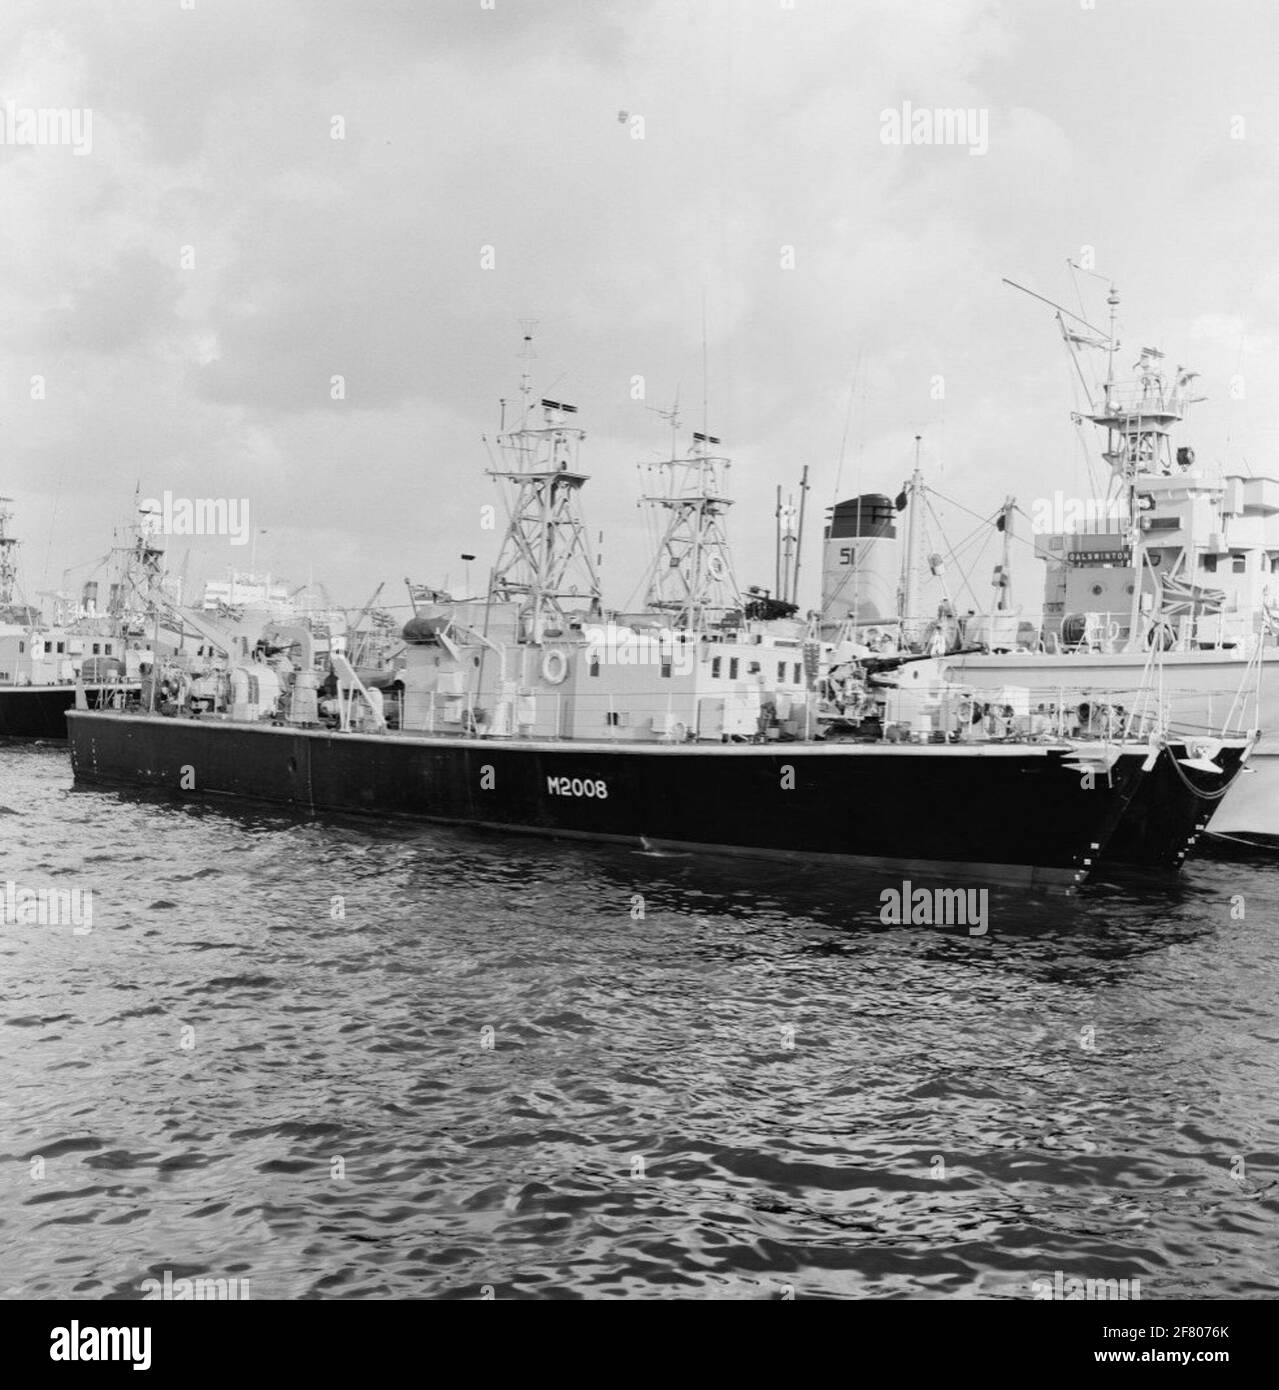 Des arceaux d'eau peu profonde britanniques de la classe Ley (coque noire) et du balai côtier HMS Dalswinton (M 1126, 1953-1973) de la classe ton (coque grise) ont visité le port d'Amsterdam en 1958. Au premier plan, le HMS Burley (M 2008, 1954-1968, rebaptisé HMS Squirrel en 1959. Banque D'Images